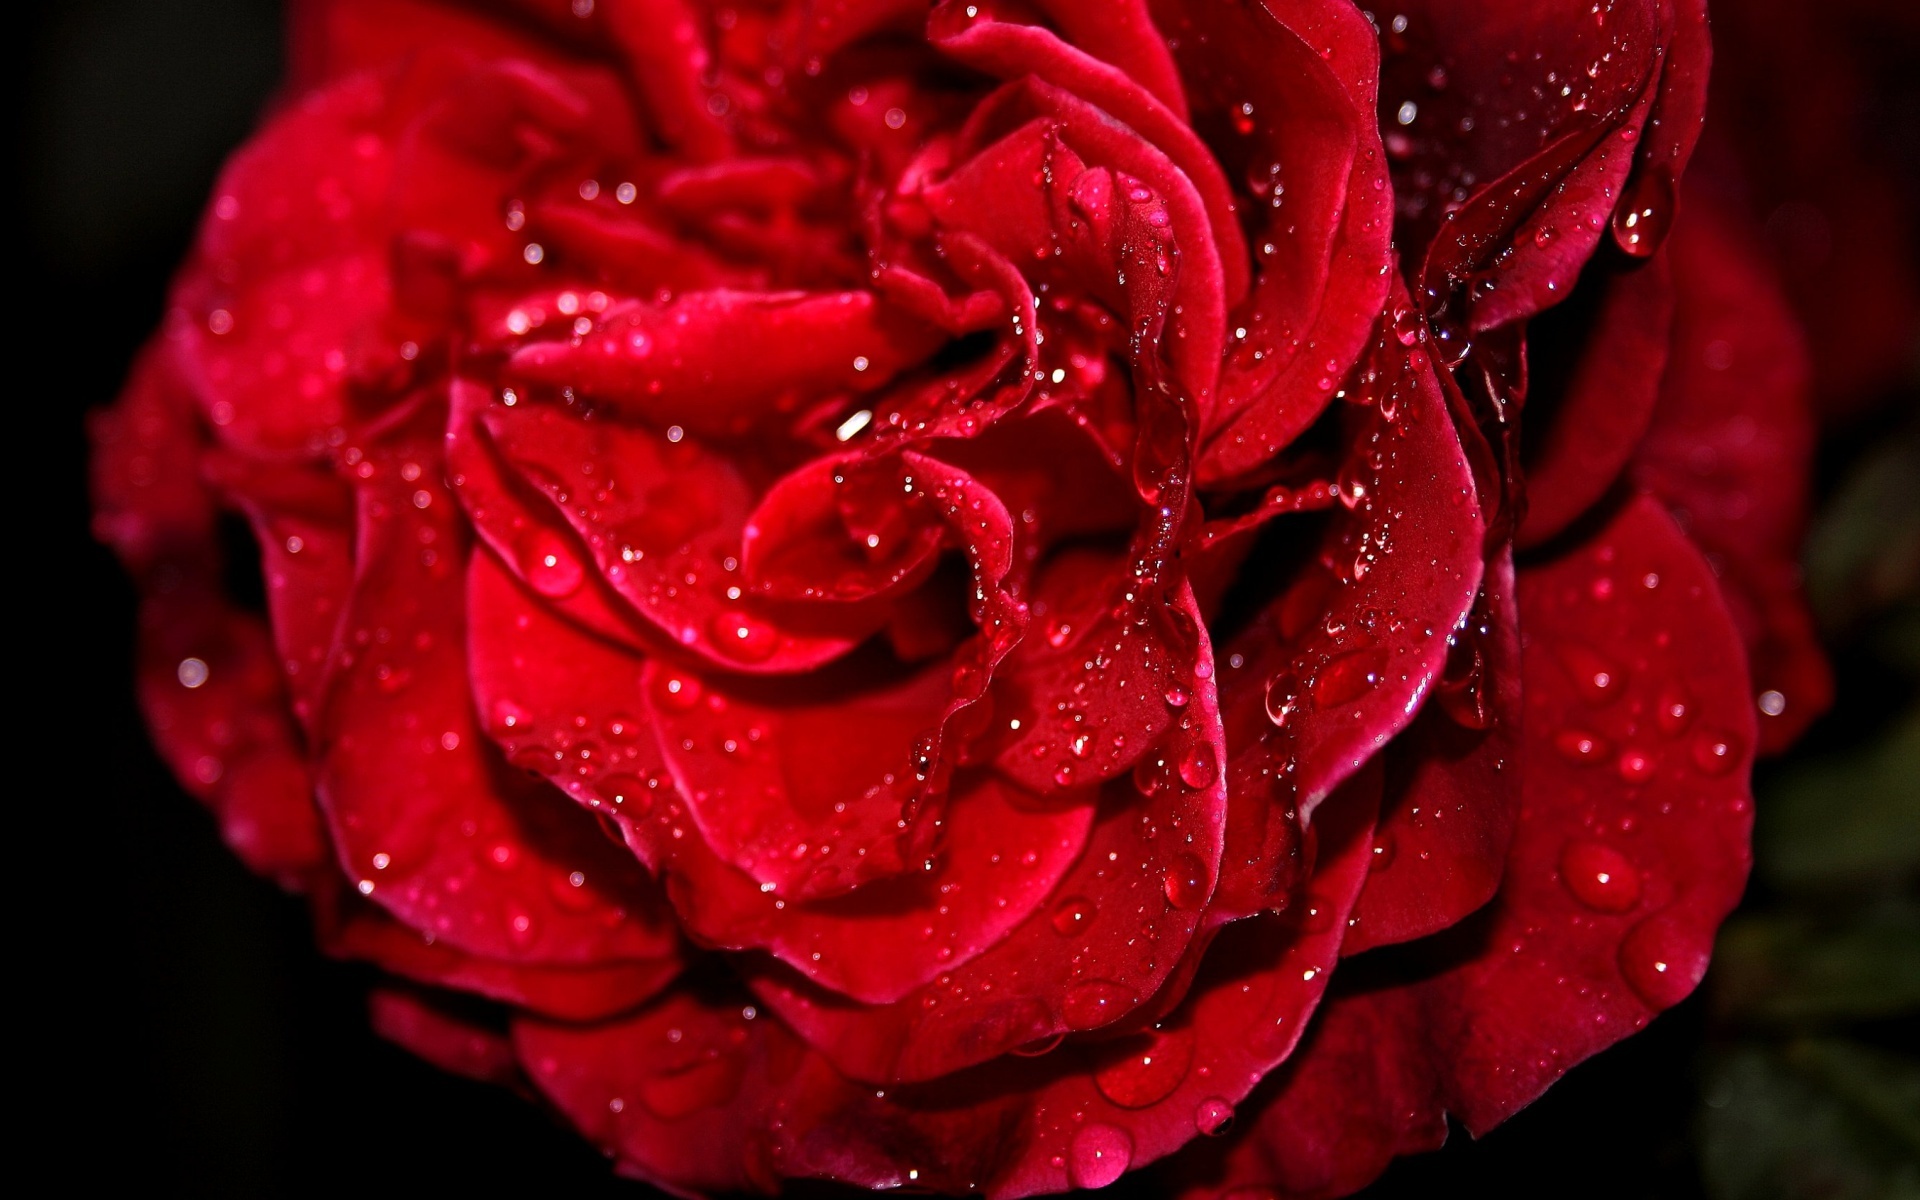  45 3D  Red Roses  Wallpaper  on WallpaperSafari